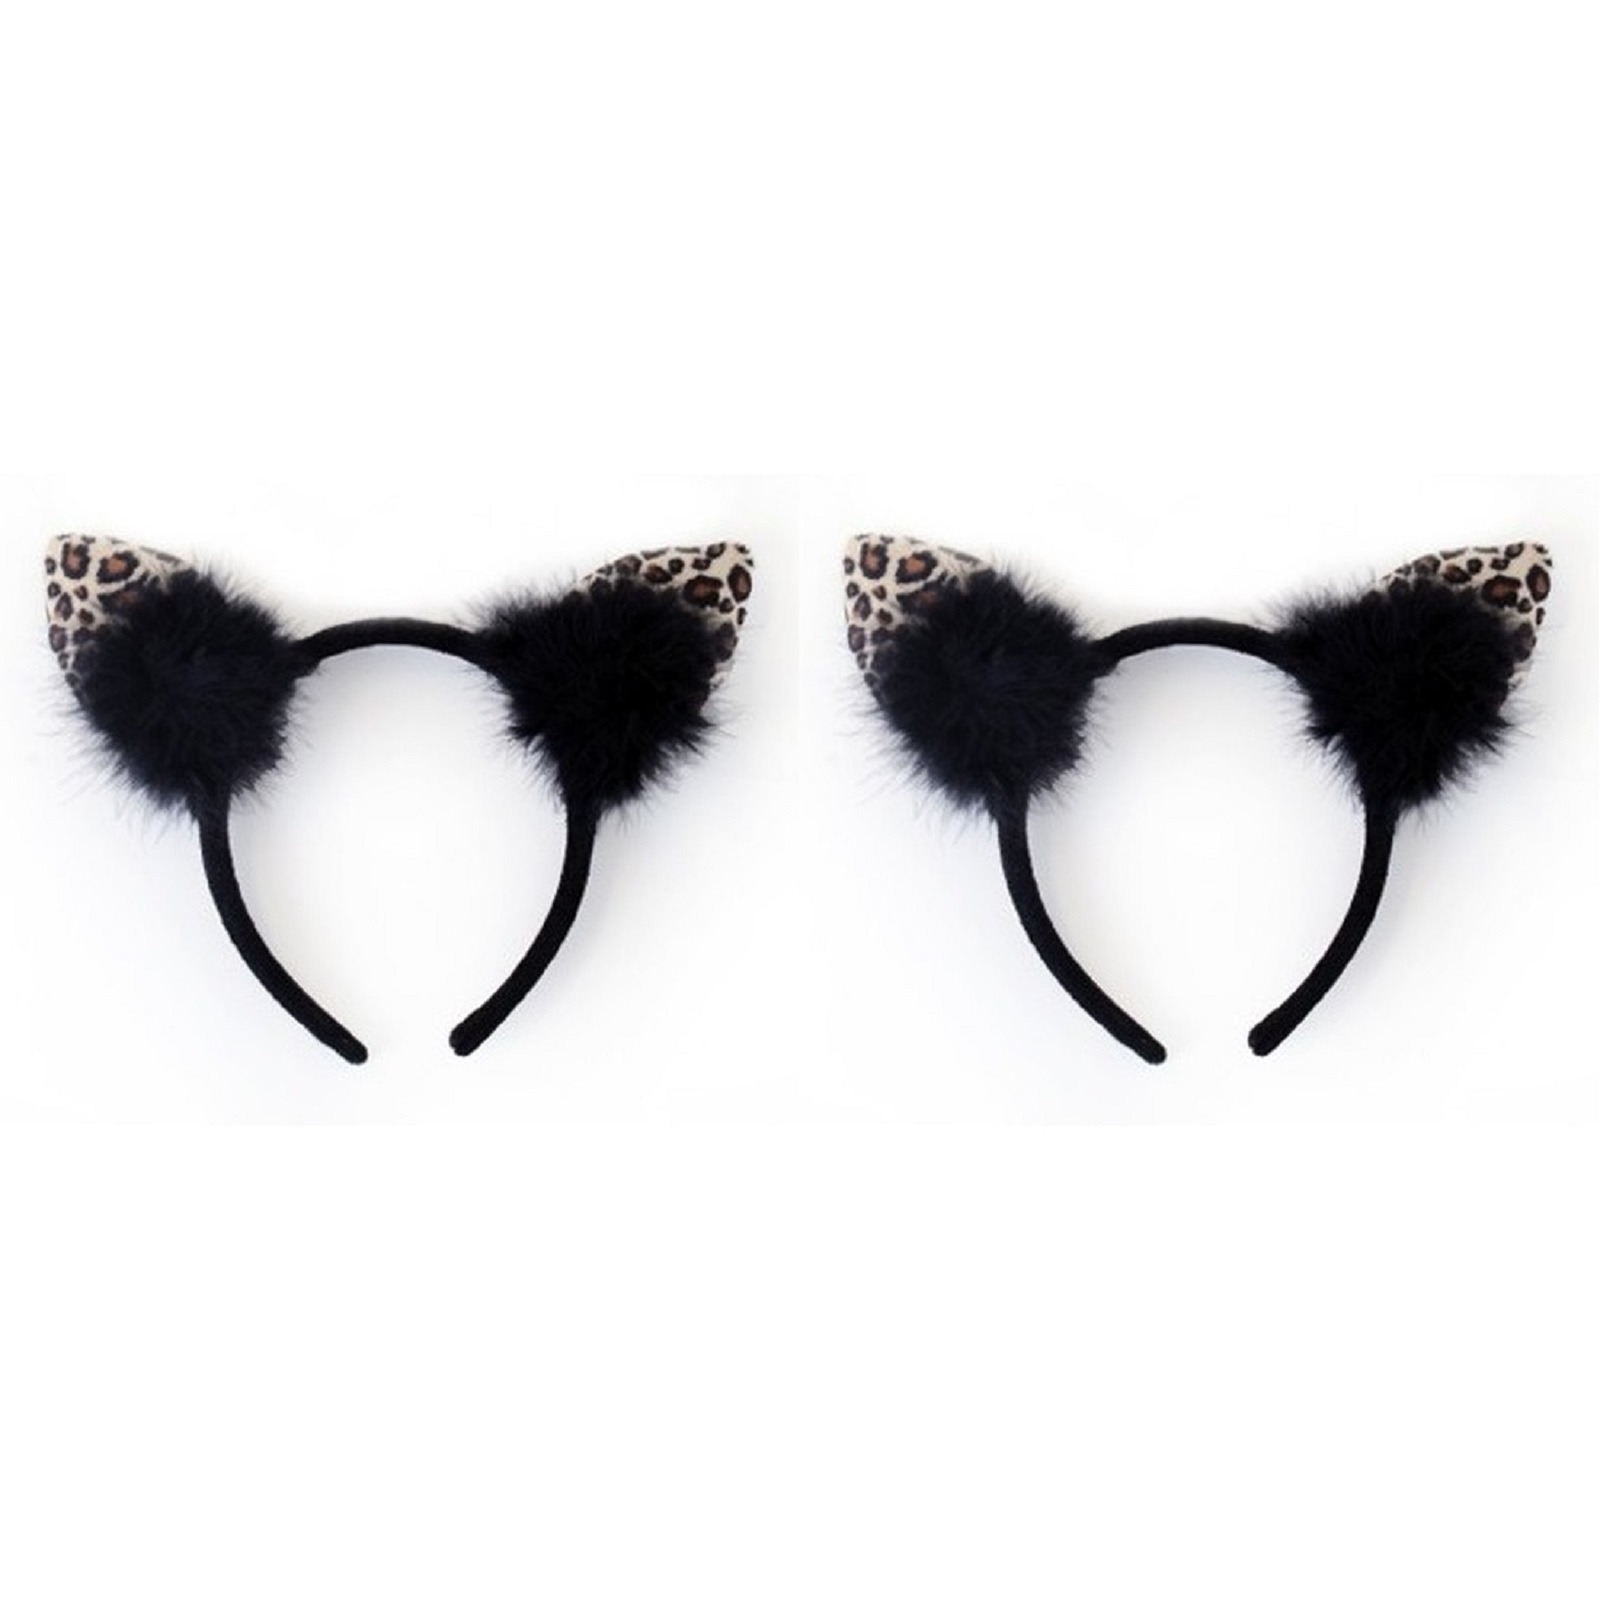 2x stuks zwarte diadeem met luipaard/katten oortjes voor dames - Carnaval verkleed oren